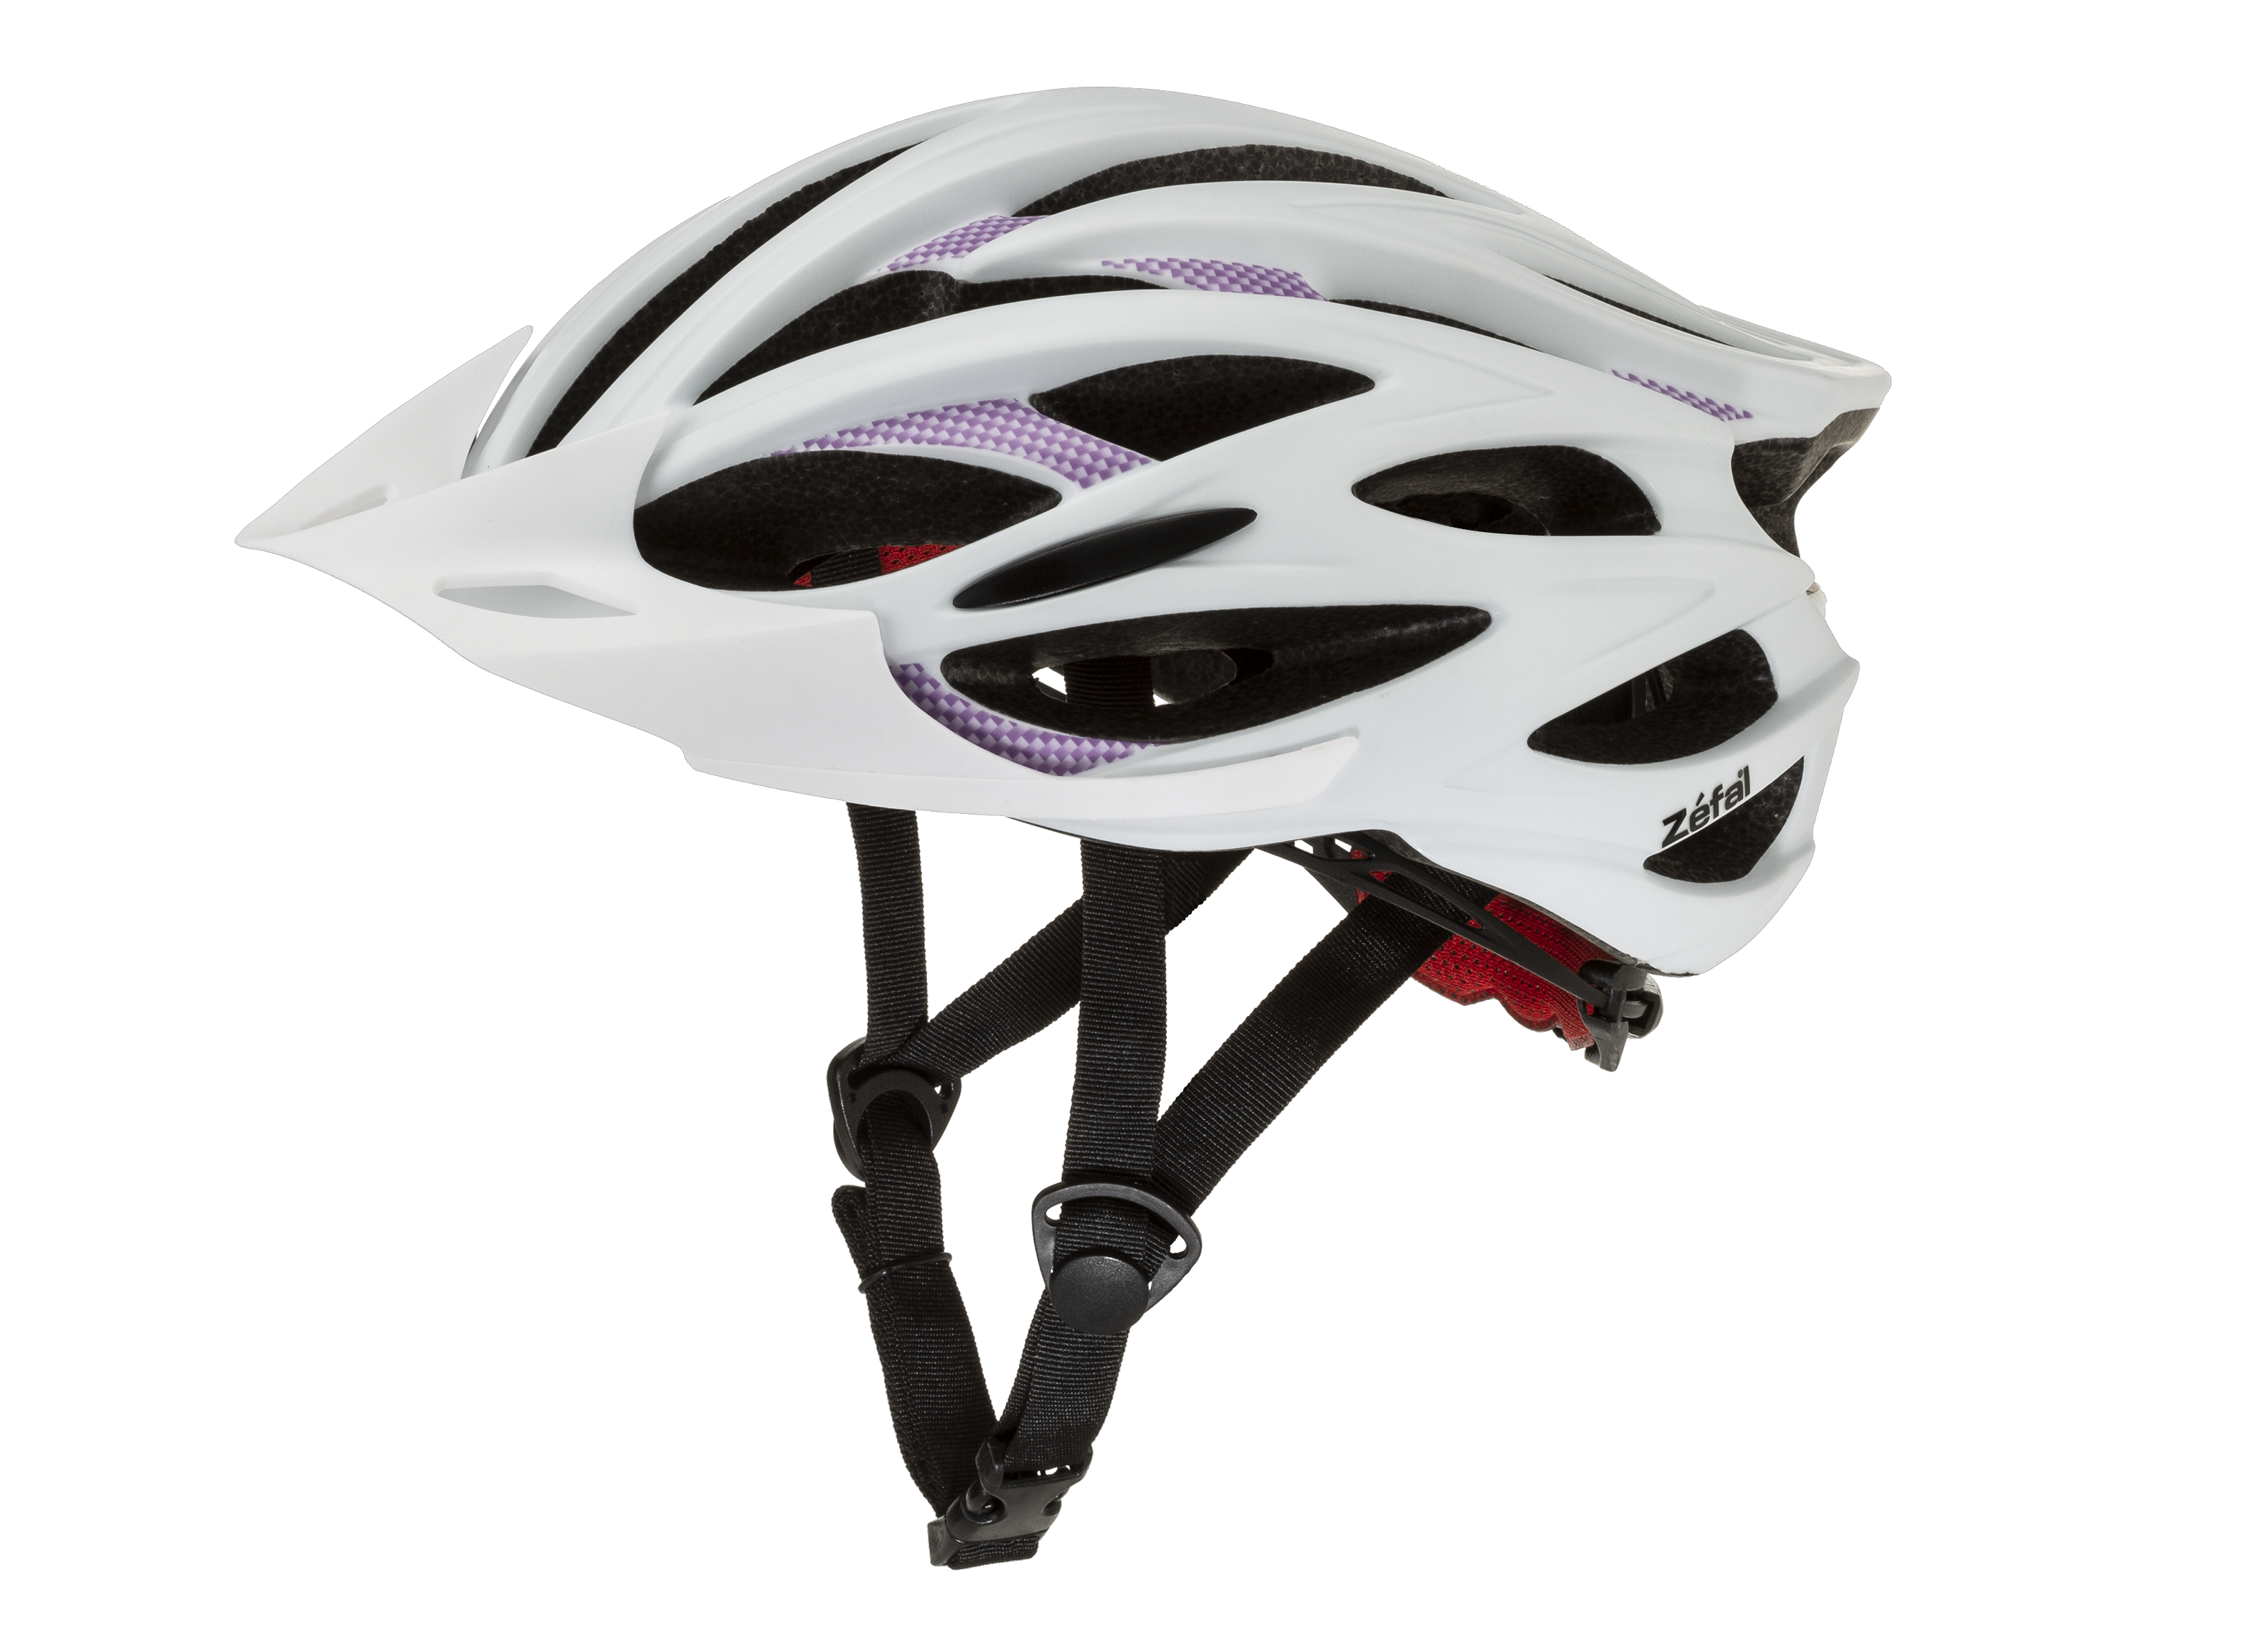 beweging leeg coupon Zefal Pro 24 Bike Helmet - Consumer Reports